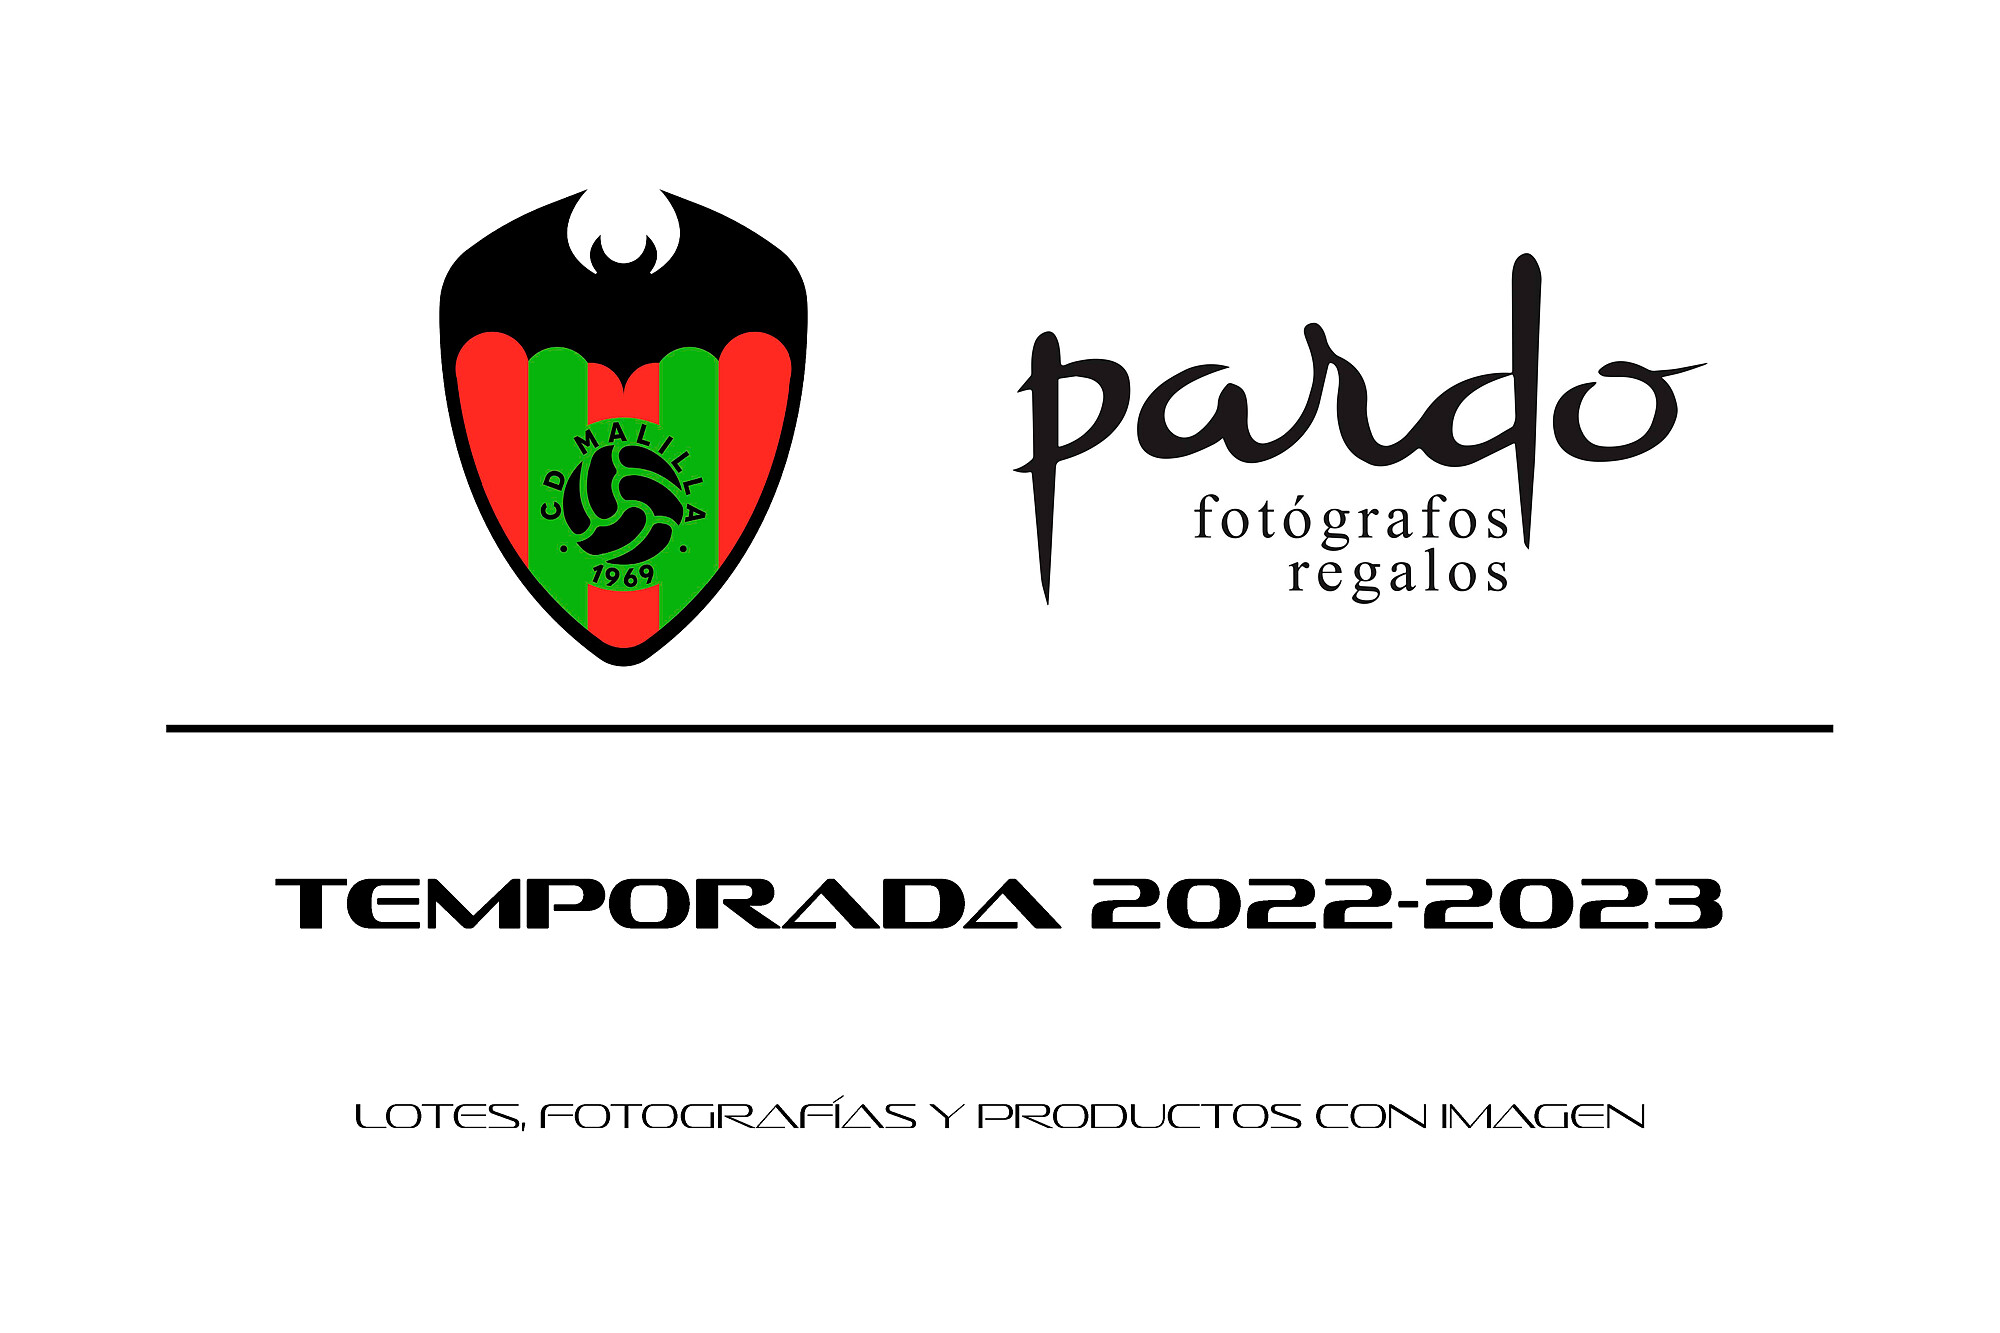 Fotógrafos Pardo - pdf-malilla-22-23-c-pagina-1.jpg